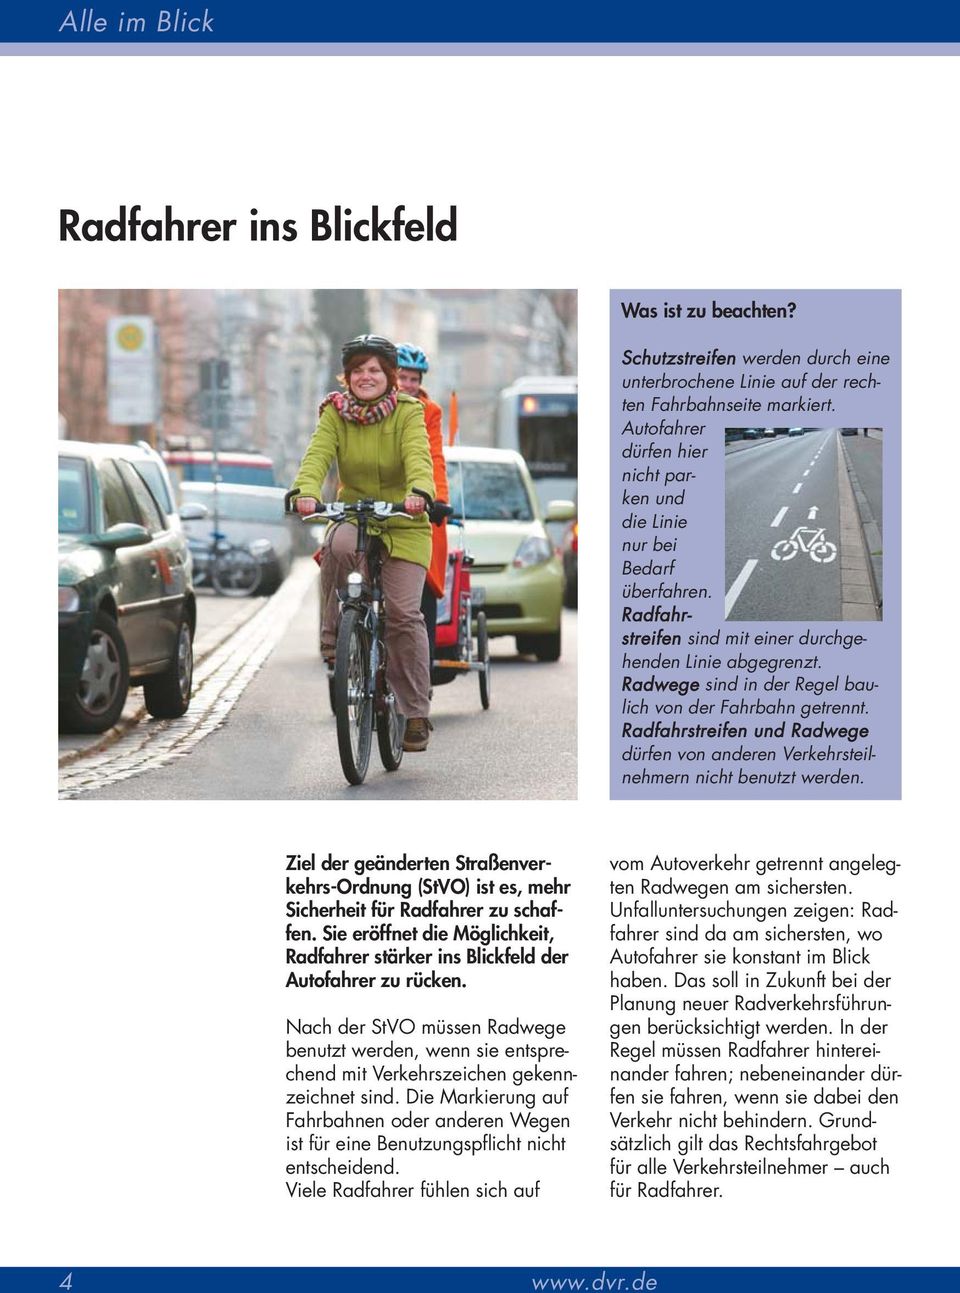 Radfahrstreifen und Radwege dürfen von anderen Verkehrsteilnehmern nicht benutzt werden. Ziel der geänderten Straßenverkehrs-Ordnung (StVO) ist es, mehr Sicherheit für Radfahrer zu schaffen.